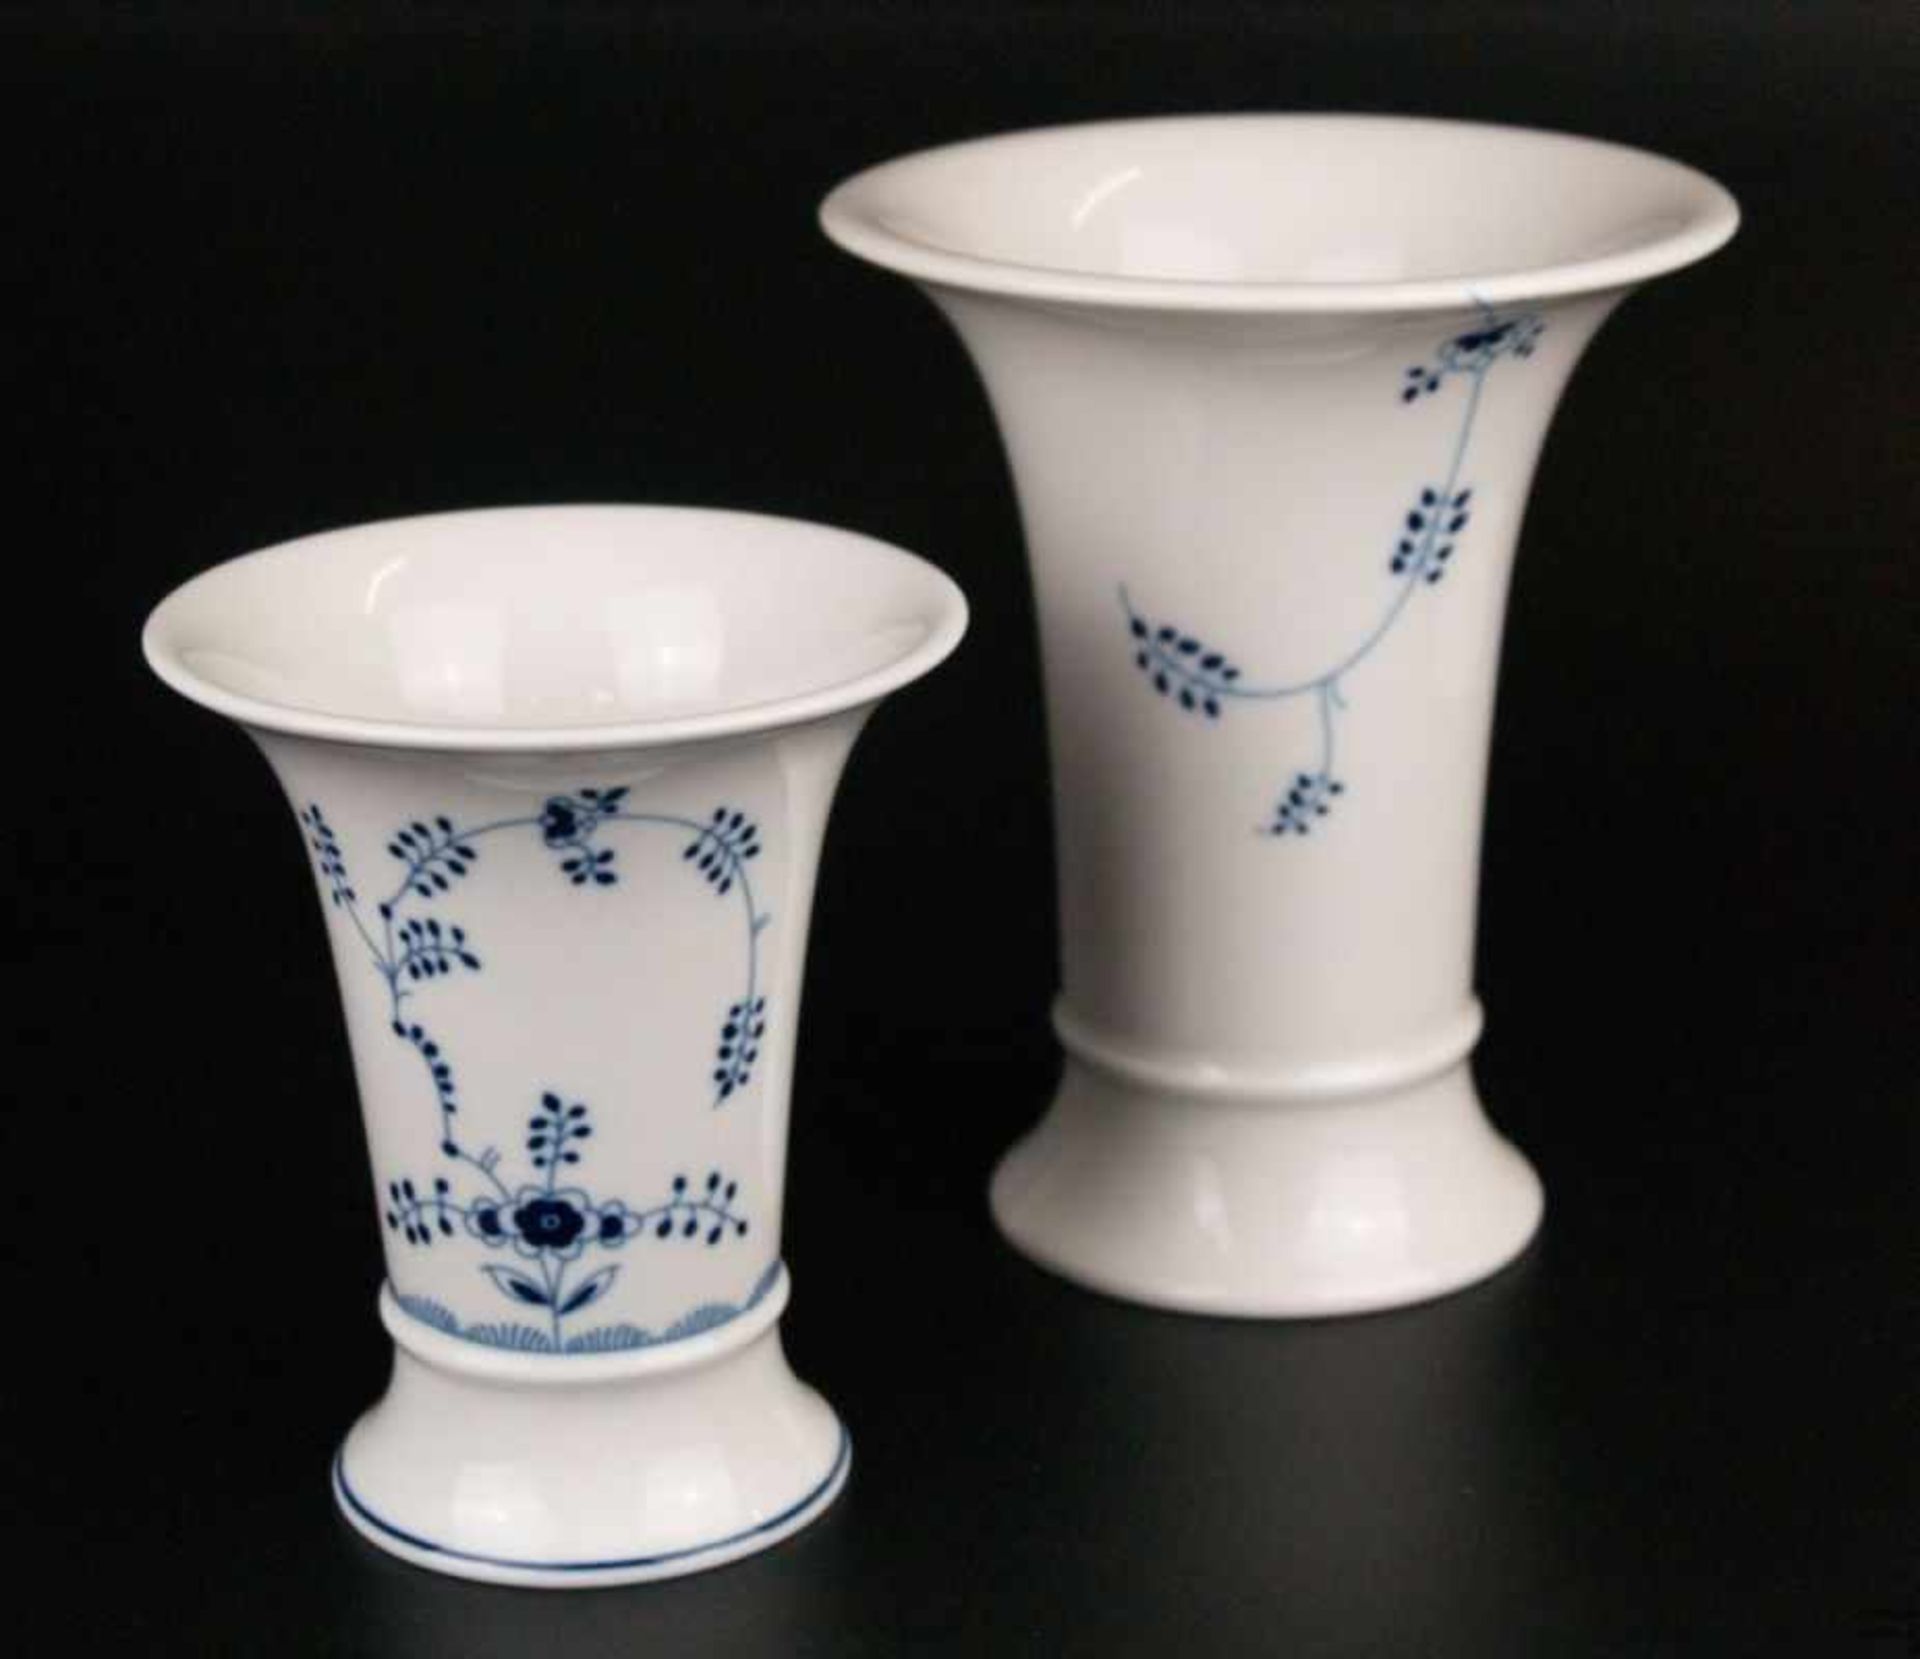 Zwei Vasen Höchst - blaue Radmarke, Trompetenform mit auskragendem Rand, blauer Streublumendekor,